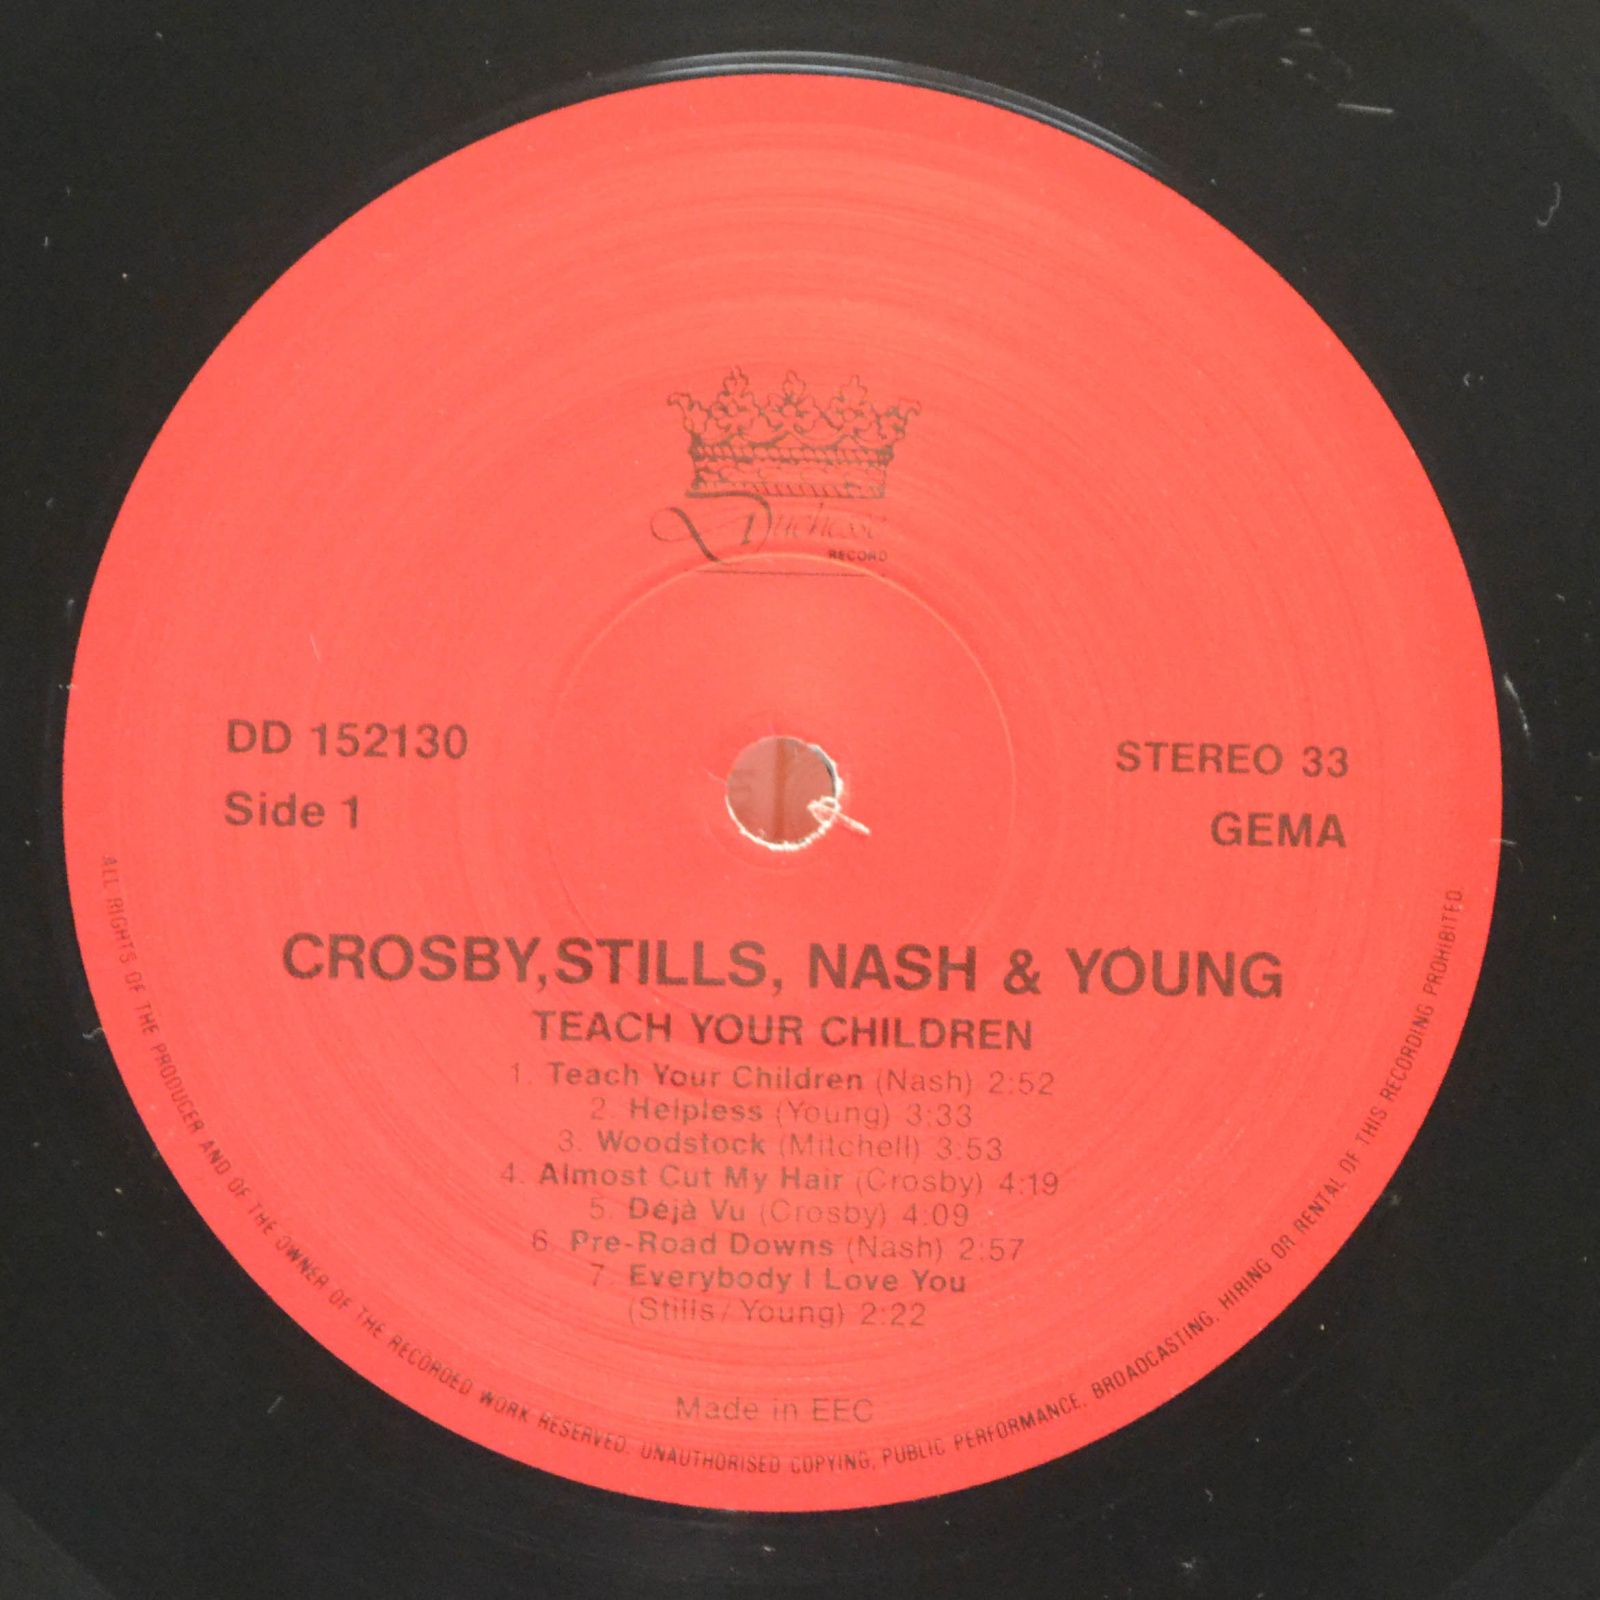 Crosby, Stills, Nash & Young — Teach Your Children, 1982